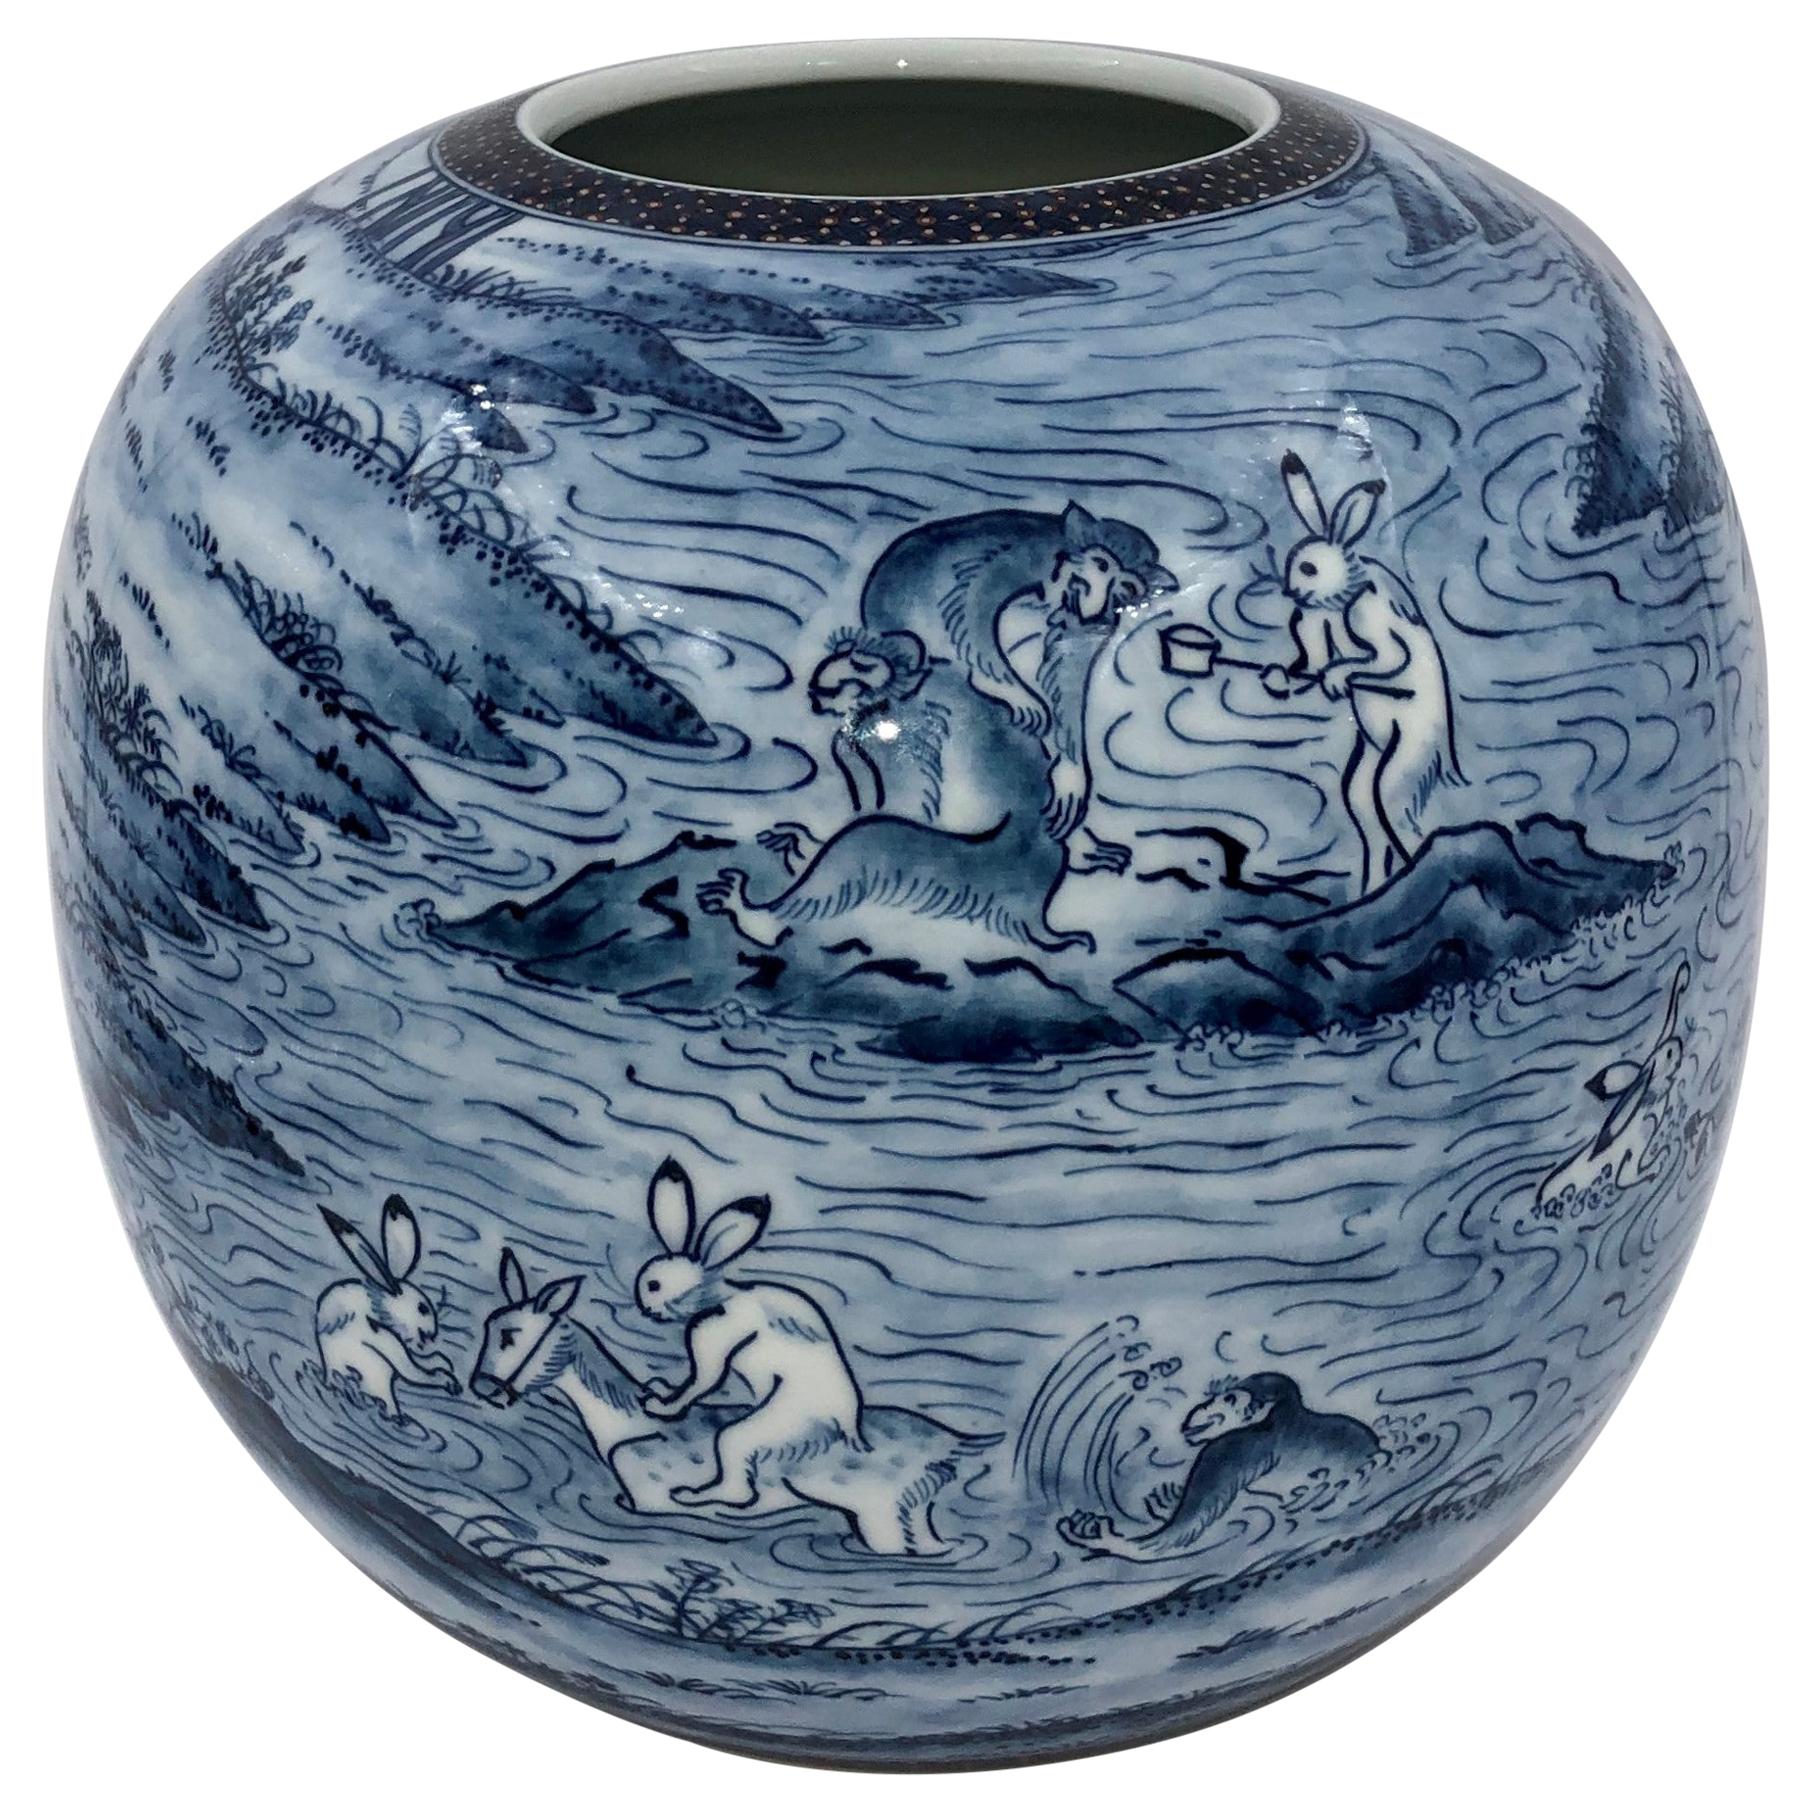 Zeitgenössische japanische Vase aus blau-weißem Porzellan von Meisterkünstler, 2